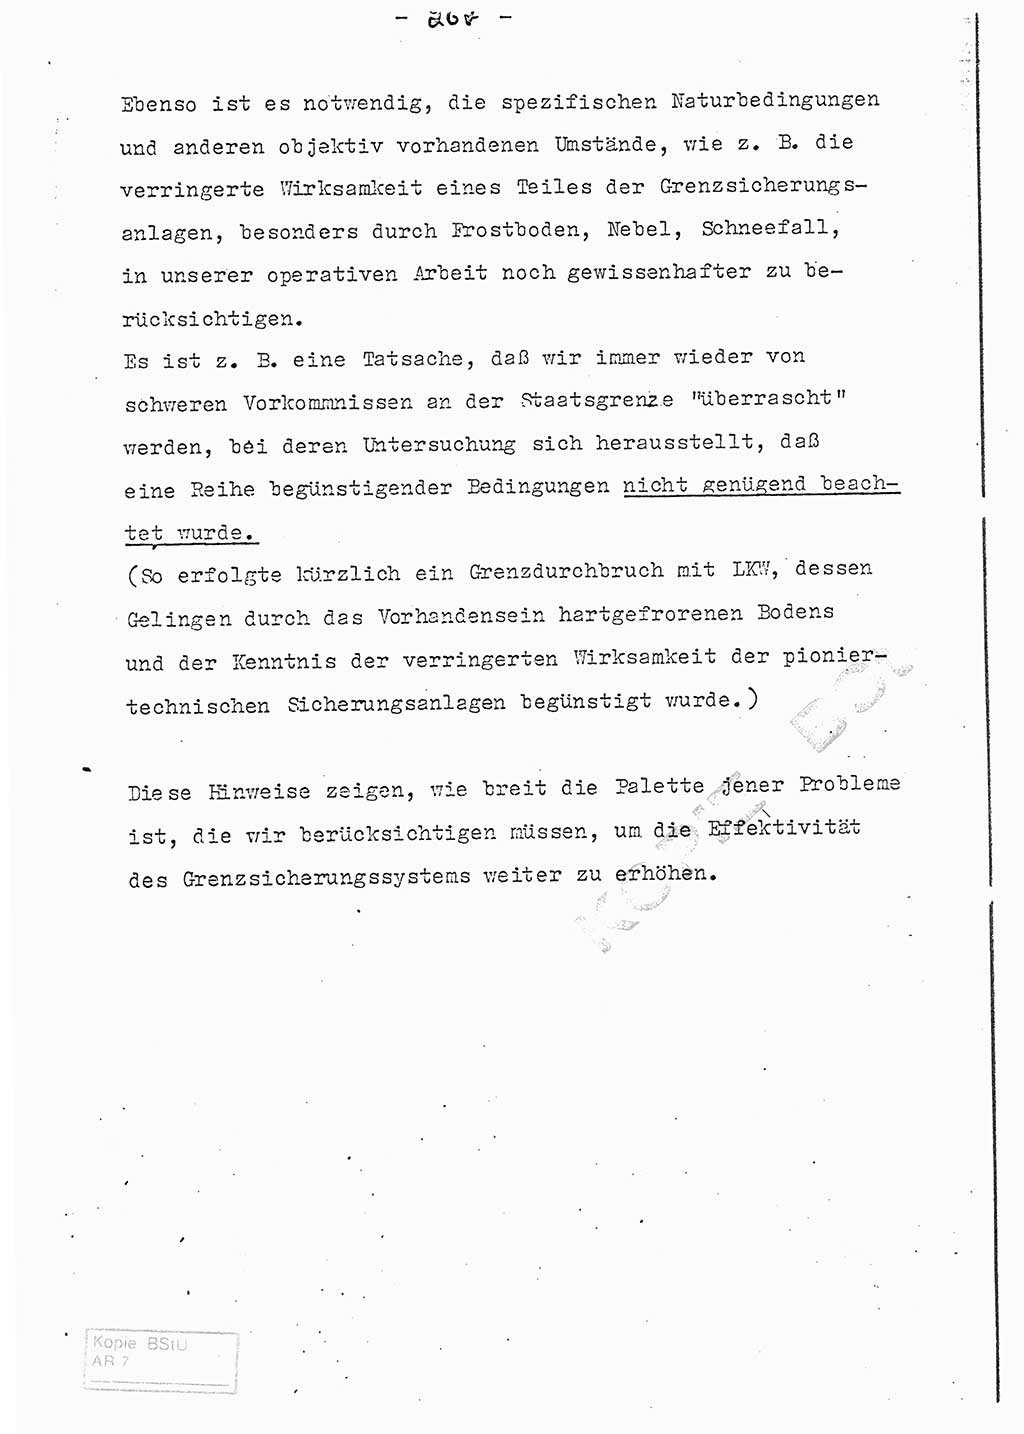 Referat (Entwurf) des Genossen Minister (Generaloberst Erich Mielke) auf der Dienstkonferenz 1972, Ministerium für Staatssicherheit (MfS) [Deutsche Demokratische Republik (DDR)], Der Minister, Geheime Verschlußsache (GVS) 008-150/72, Berlin 25.2.1972, Seite 267 (Ref. Entw. DK MfS DDR Min. GVS 008-150/72 1972, S. 267)